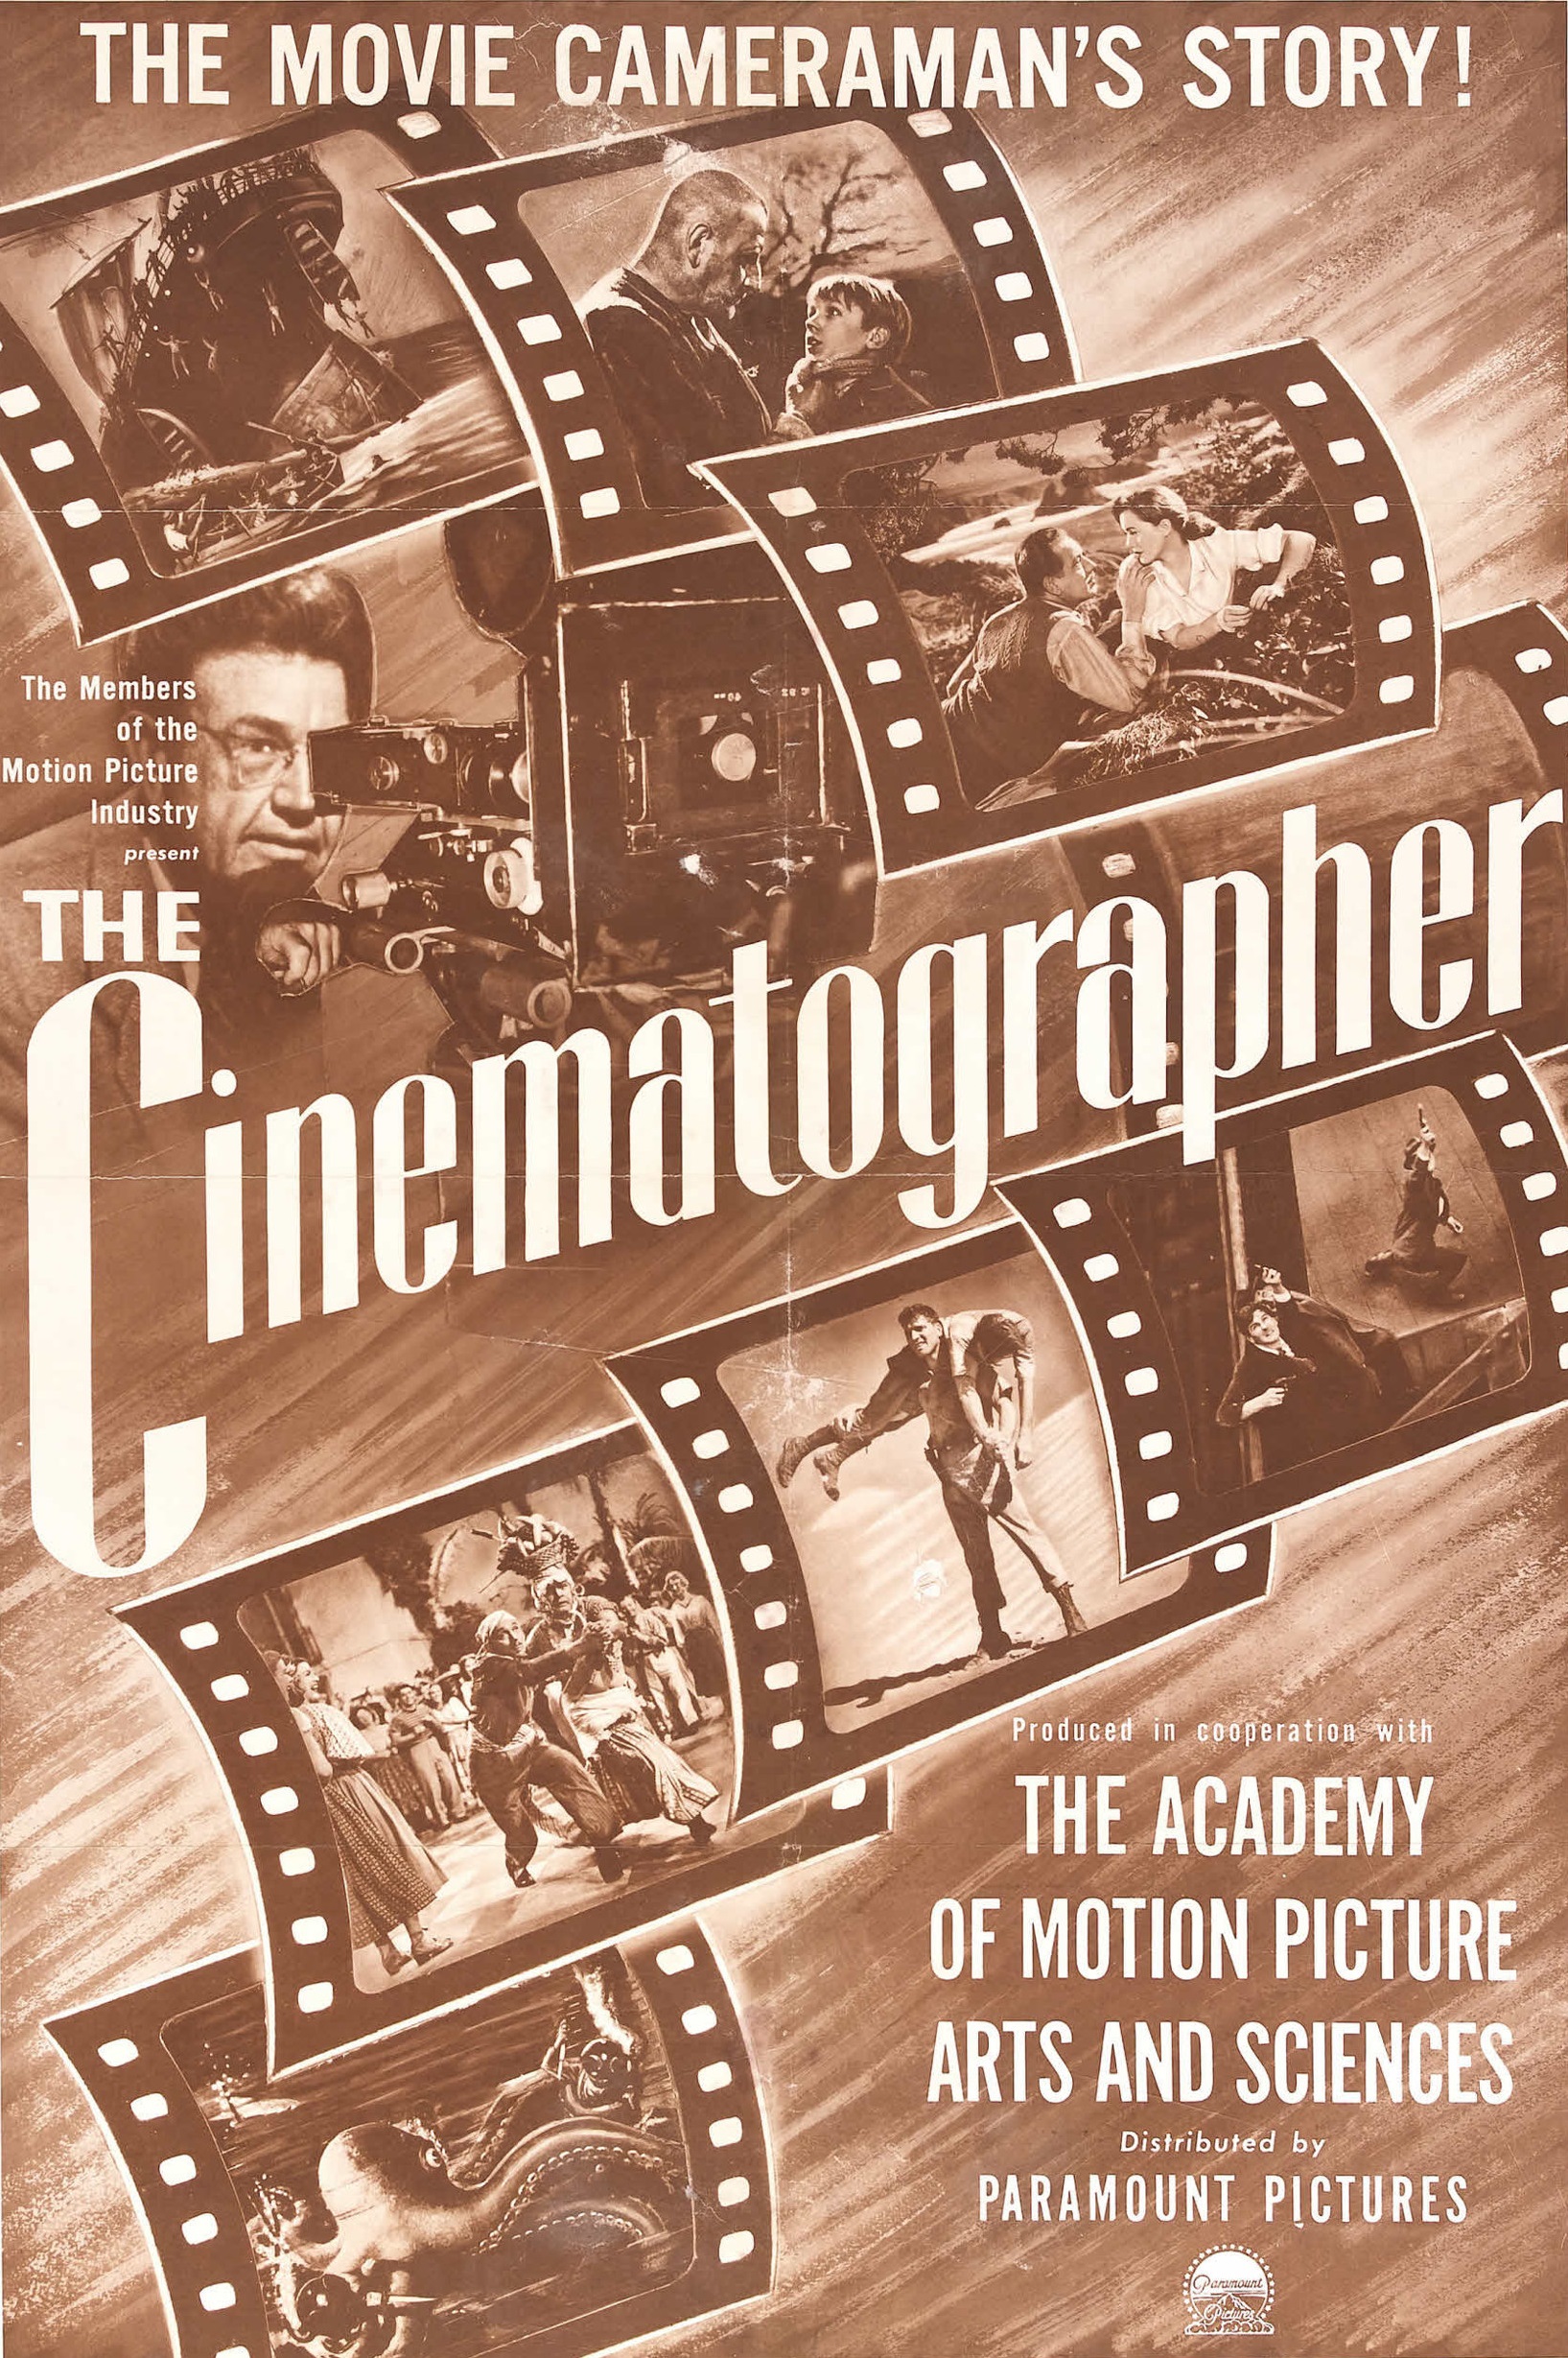 The Cinematographer